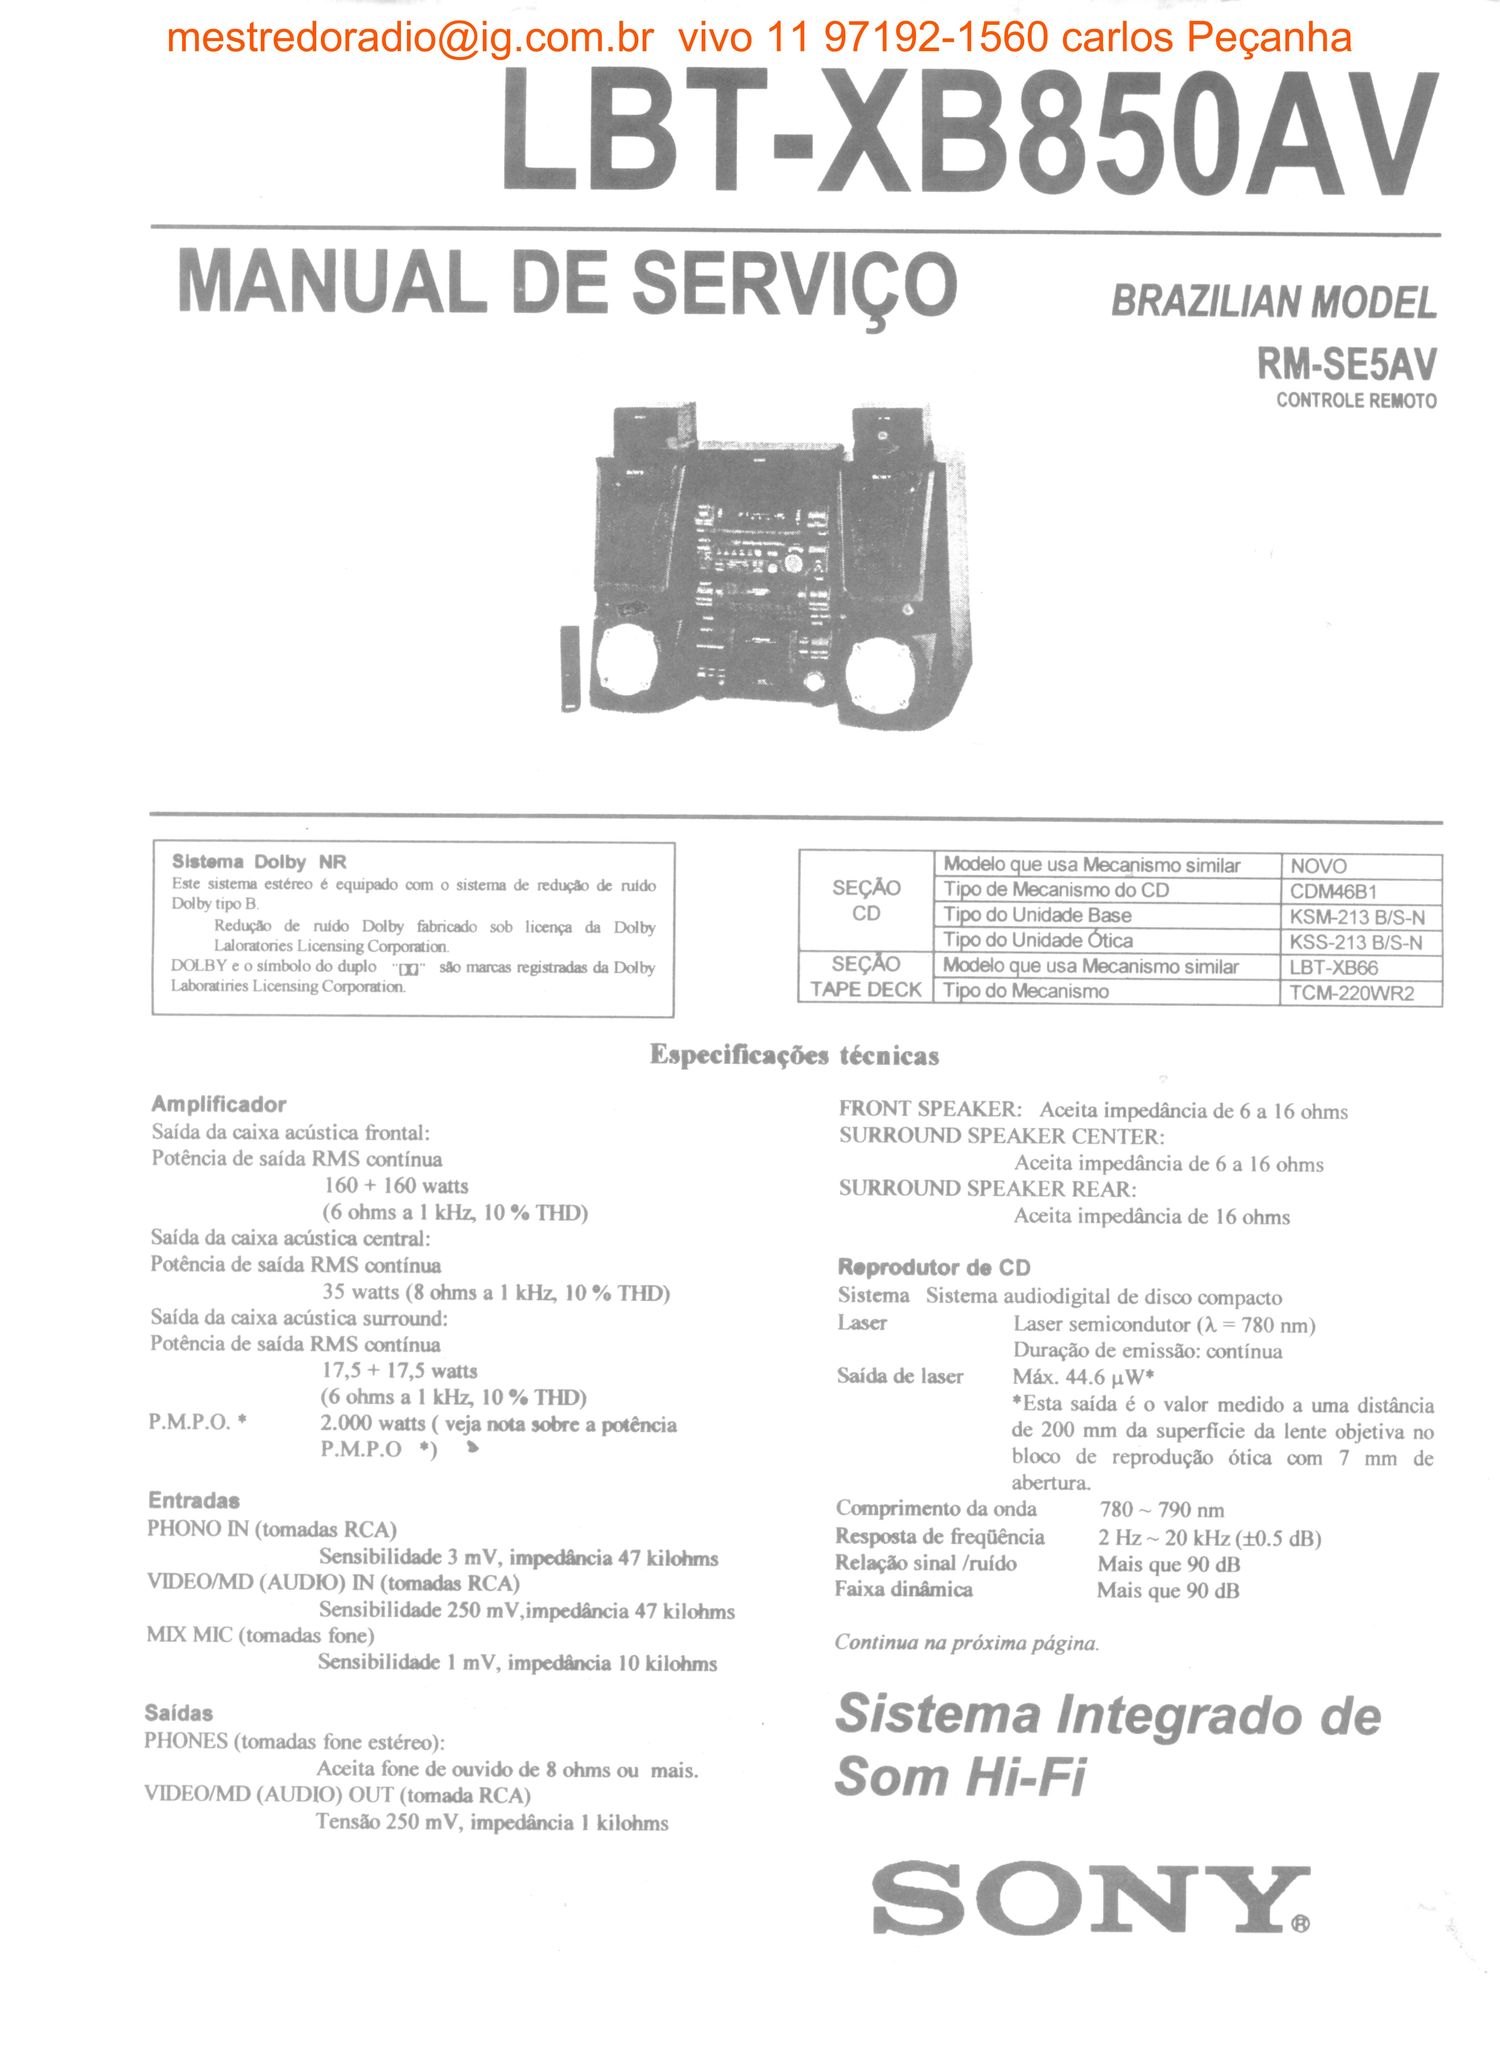 sony lbt xb850av service manual br